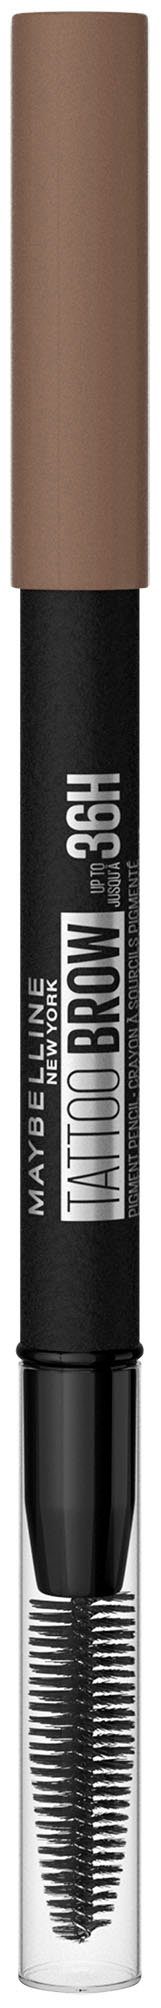 MAYBELLINE NEW YORK Augenbrauen-Stift Tattoo Augen-Make-Up Brow wasserfeste mit 2 Bürste, Blonde Formel, 36H